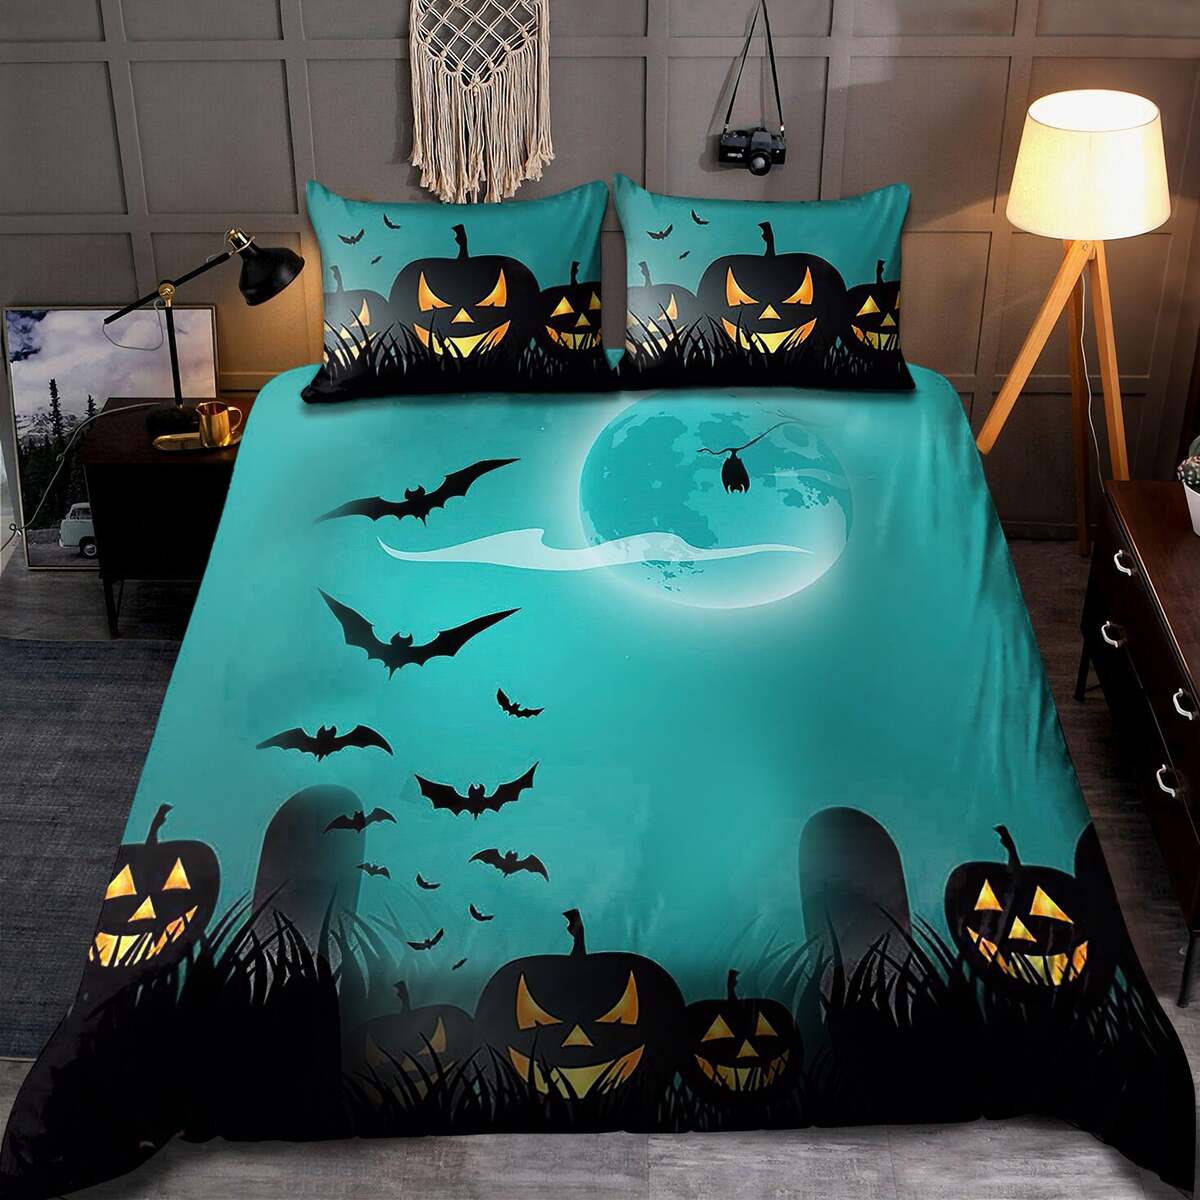 The Black Bat And Pumpkin Quilt Bedding Set - Blue Quilt Bed Set Comforter Home Room Decoration